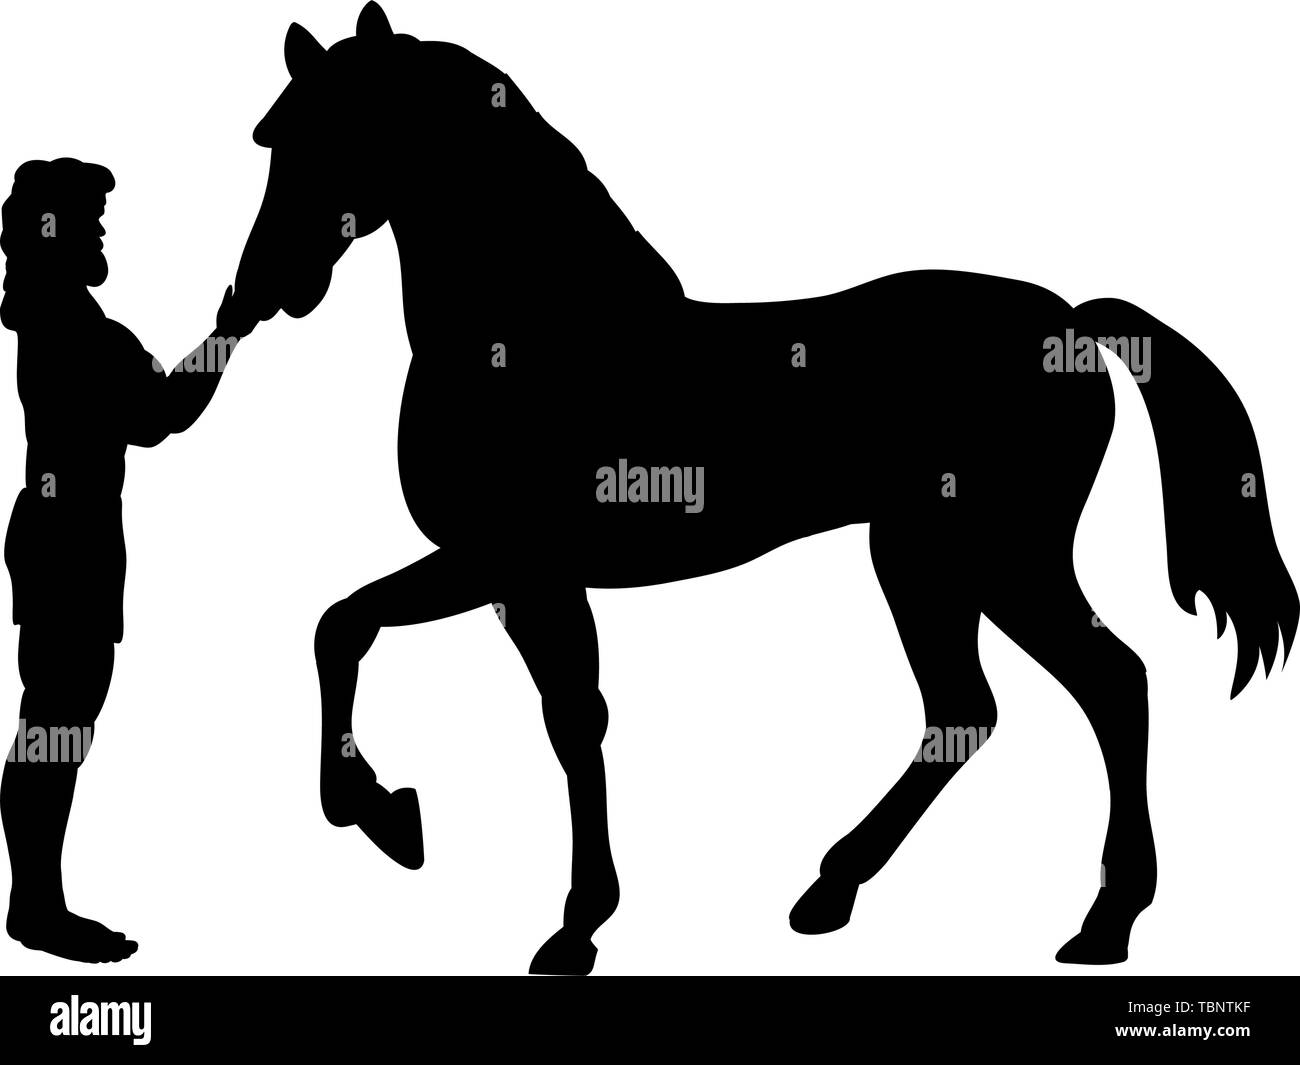 Heracles caballo mitología silueta fantasía. Ilustración vectorial. Ilustración del Vector